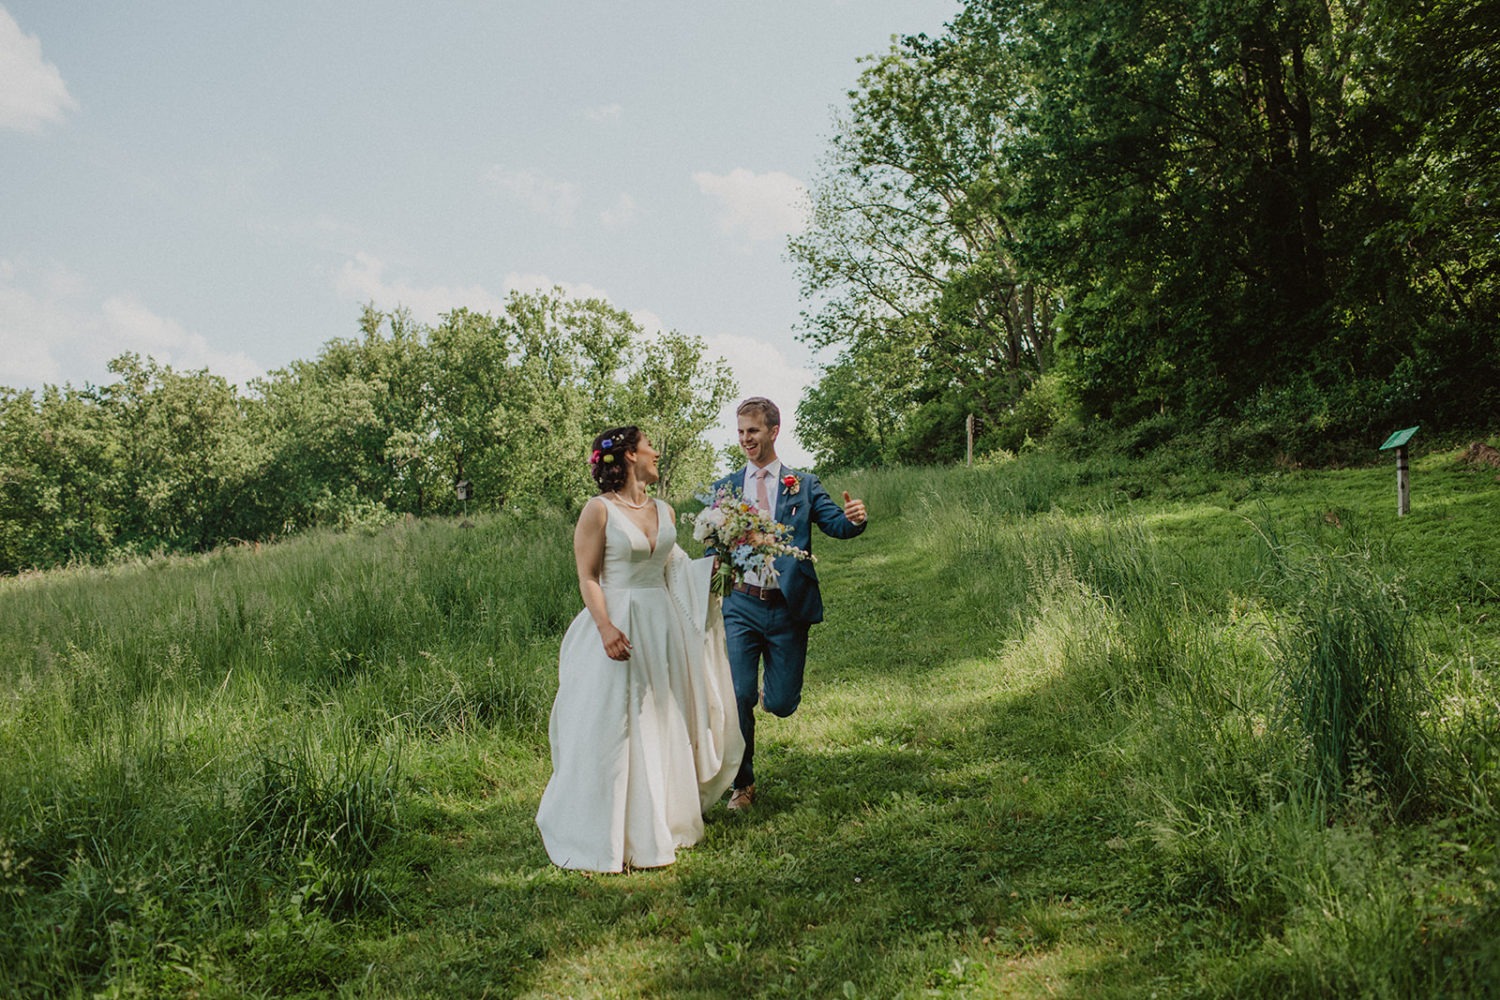 Couple runs down green-grass hill at nature center wedding